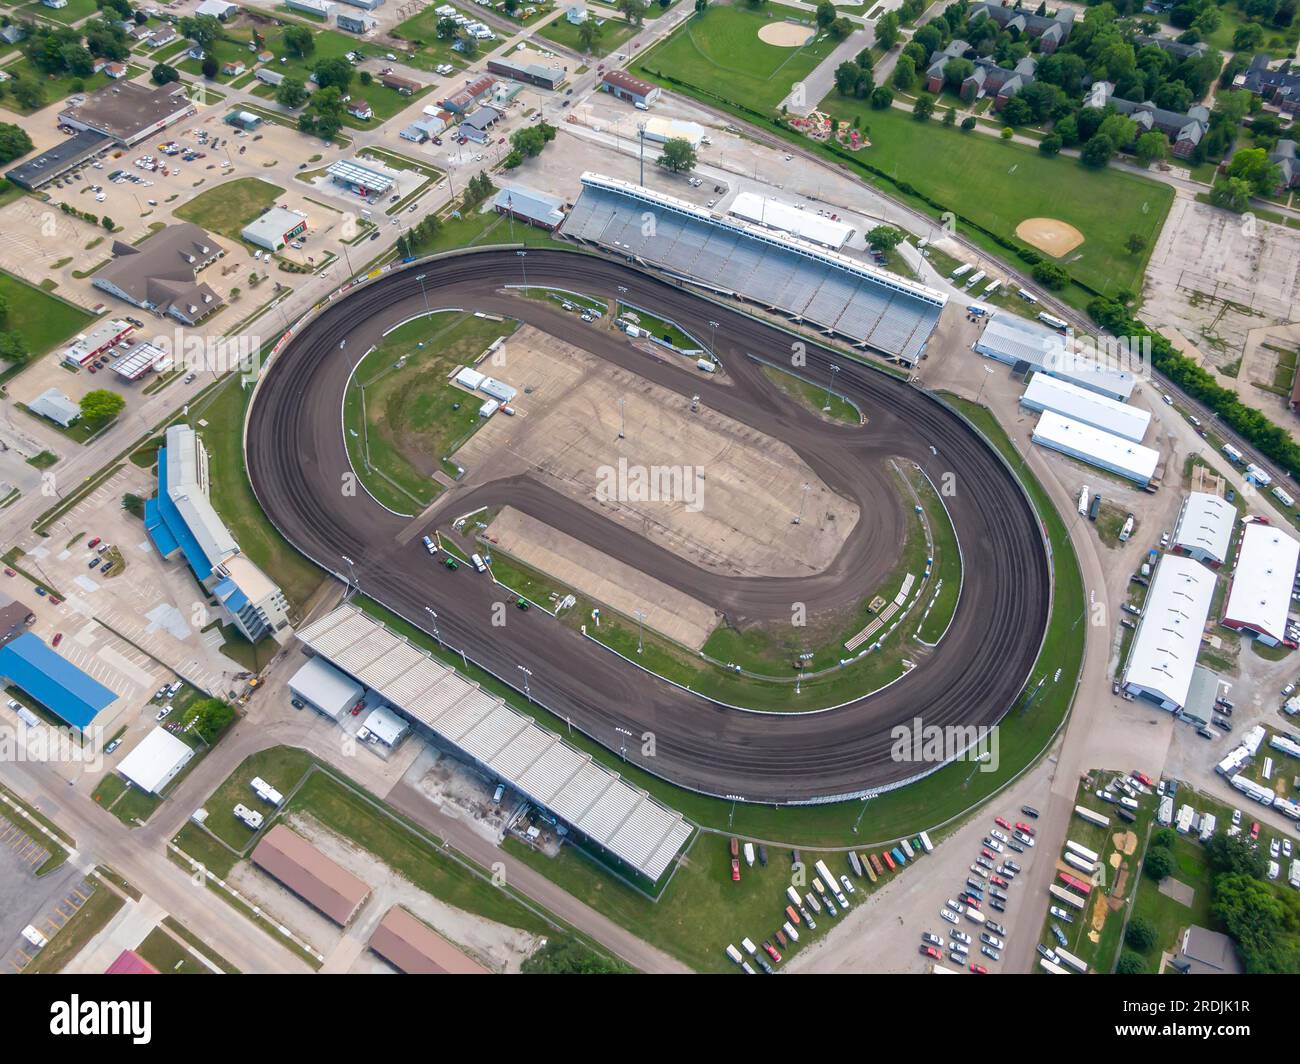 19 luglio 2020, Knoxville, Iowa, Stati Uniti: Il Knoxville Raceway è un circuito ovale semi-banked di 2 km di terra (zook Clay) situato nella contea di Marion Foto Stock